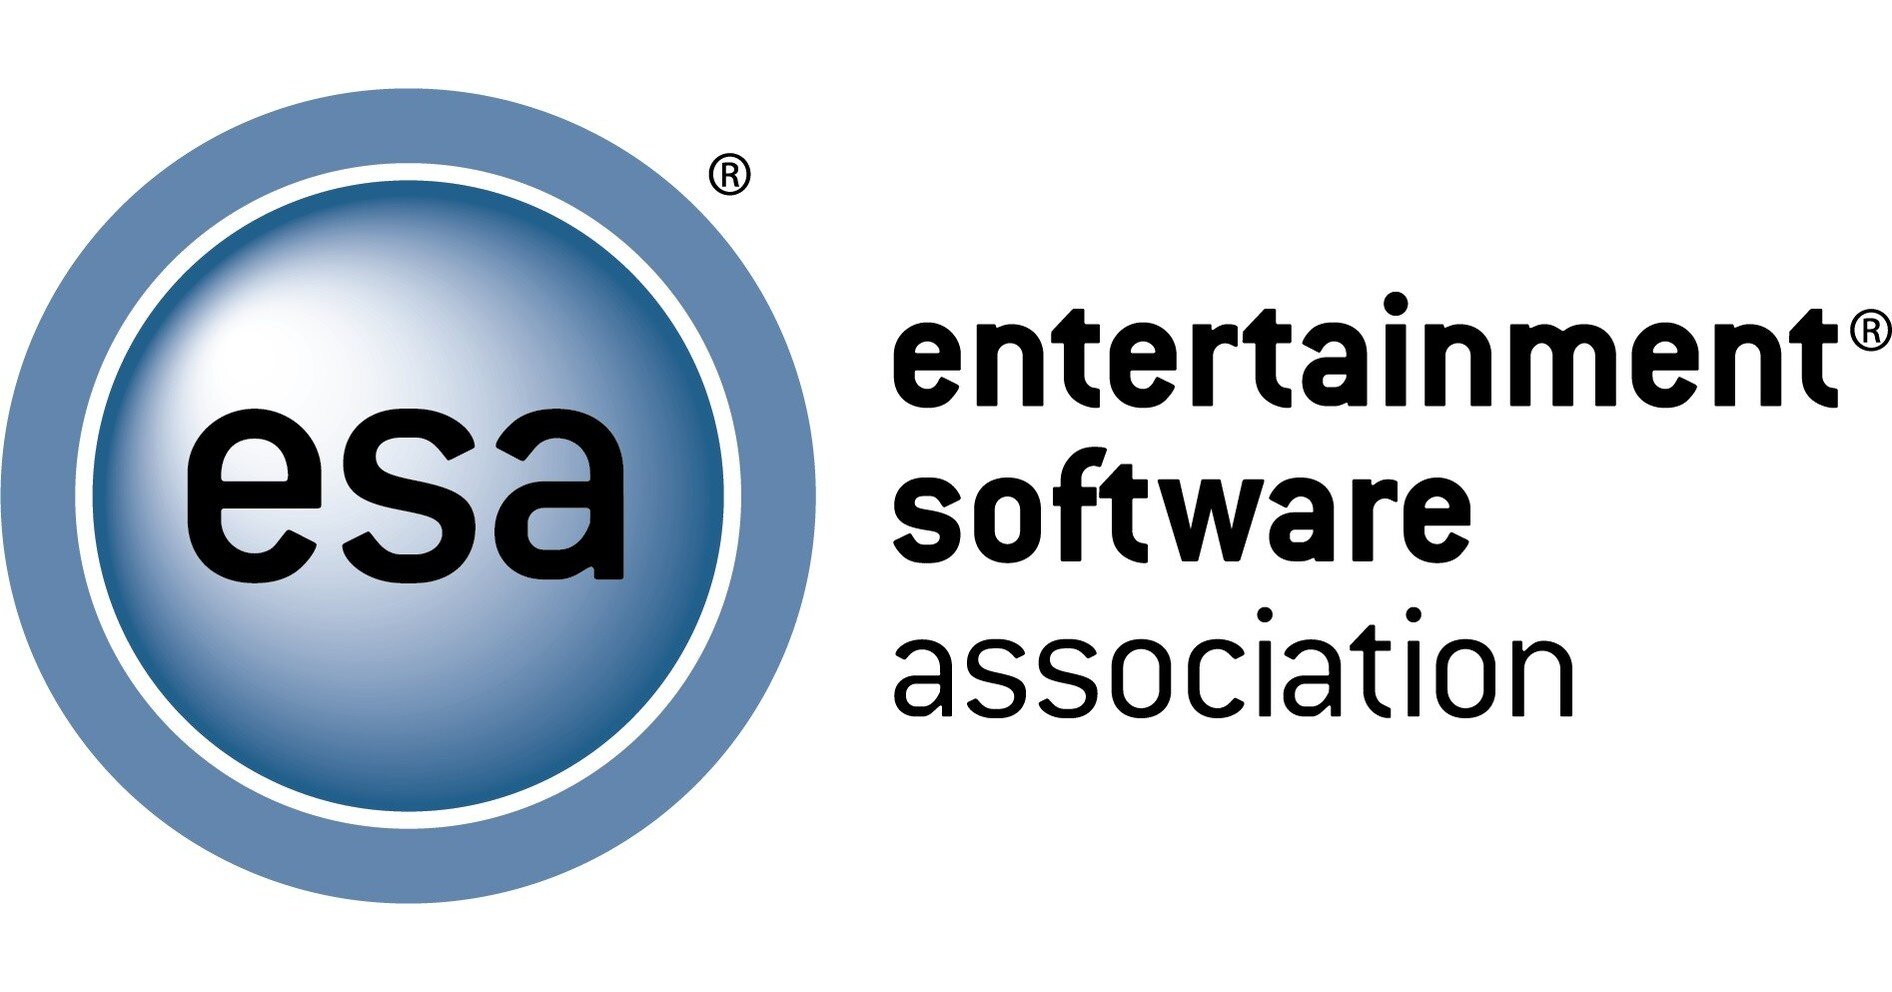 Entertainment Software Association logo.jpeg